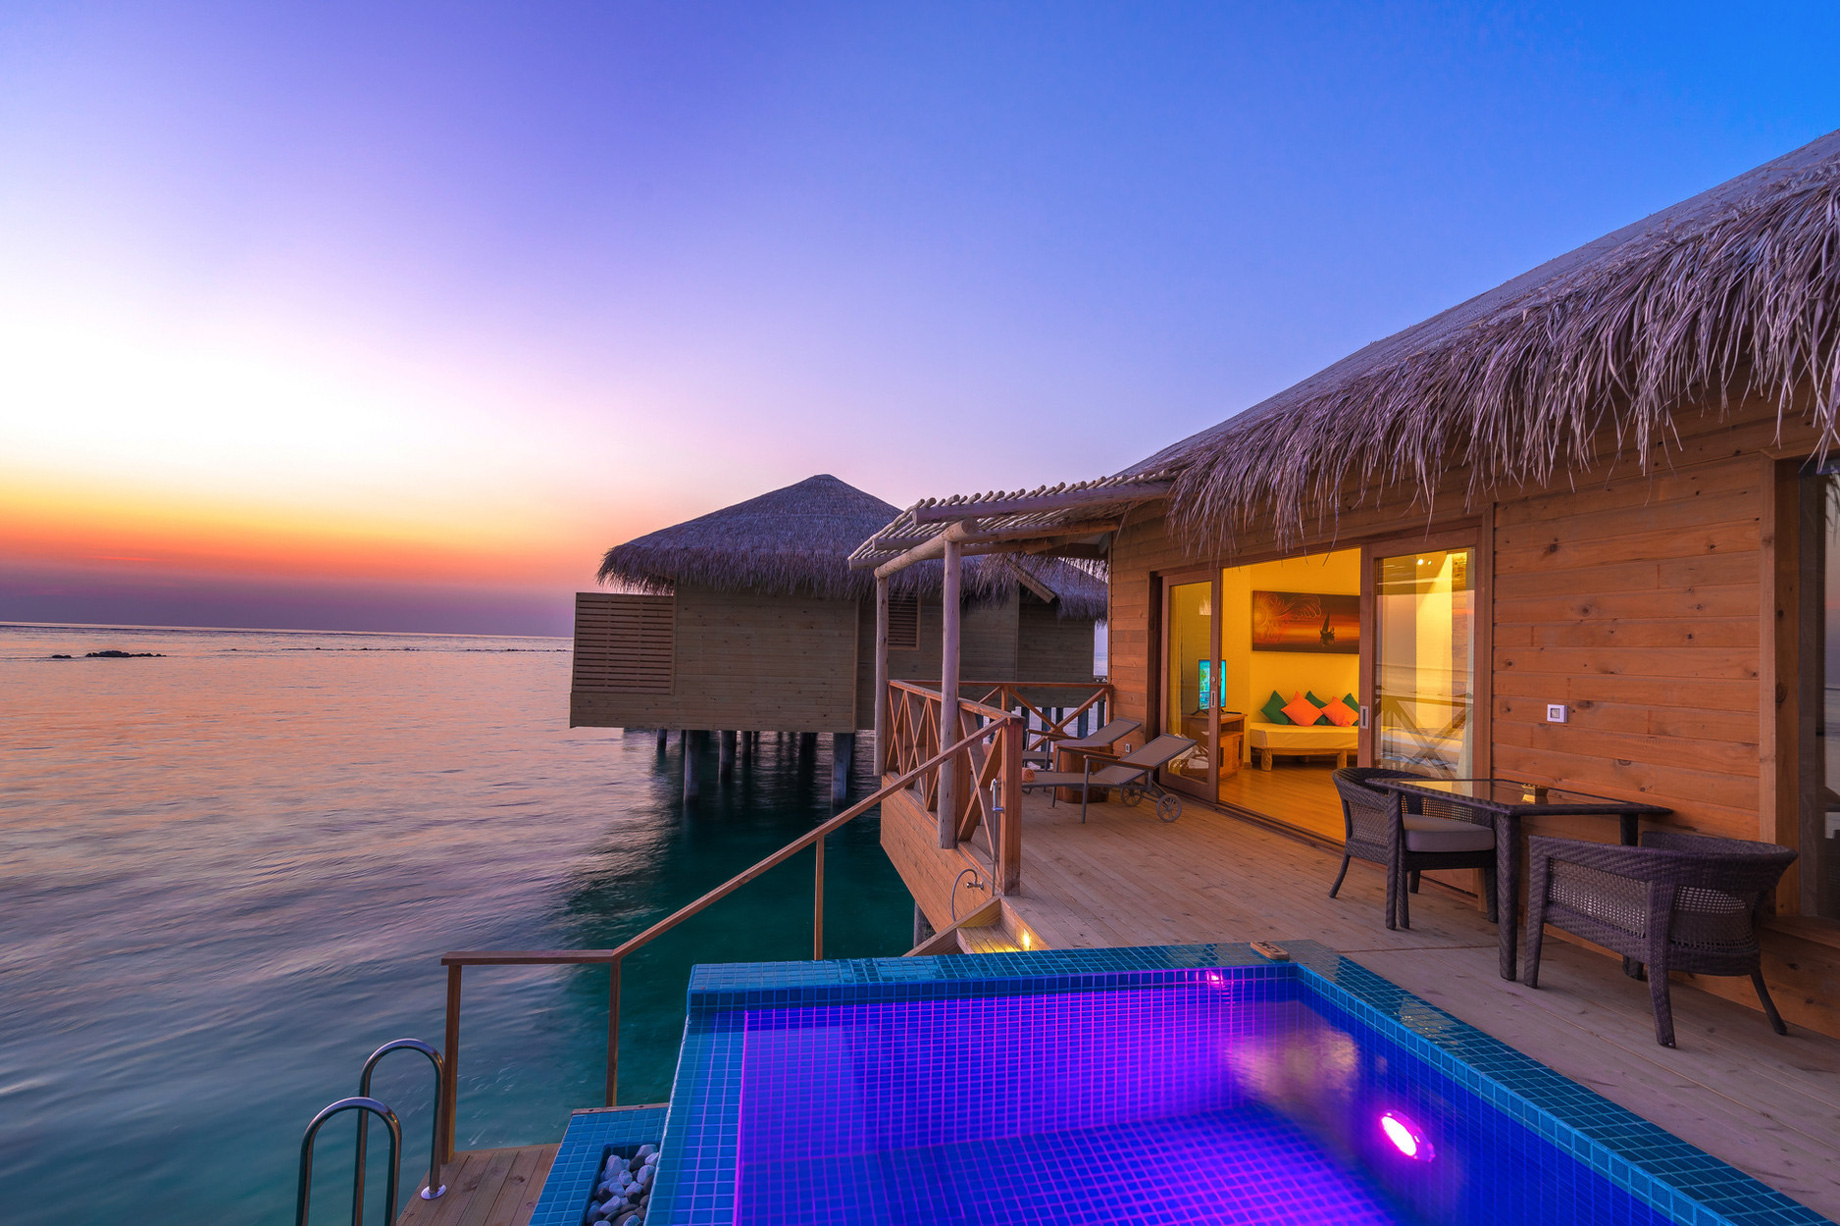 You & Me Maldives Resort – Uthurumaafaru, Raa Atoll, Maldives – Aqua Suite with Pool Sunset